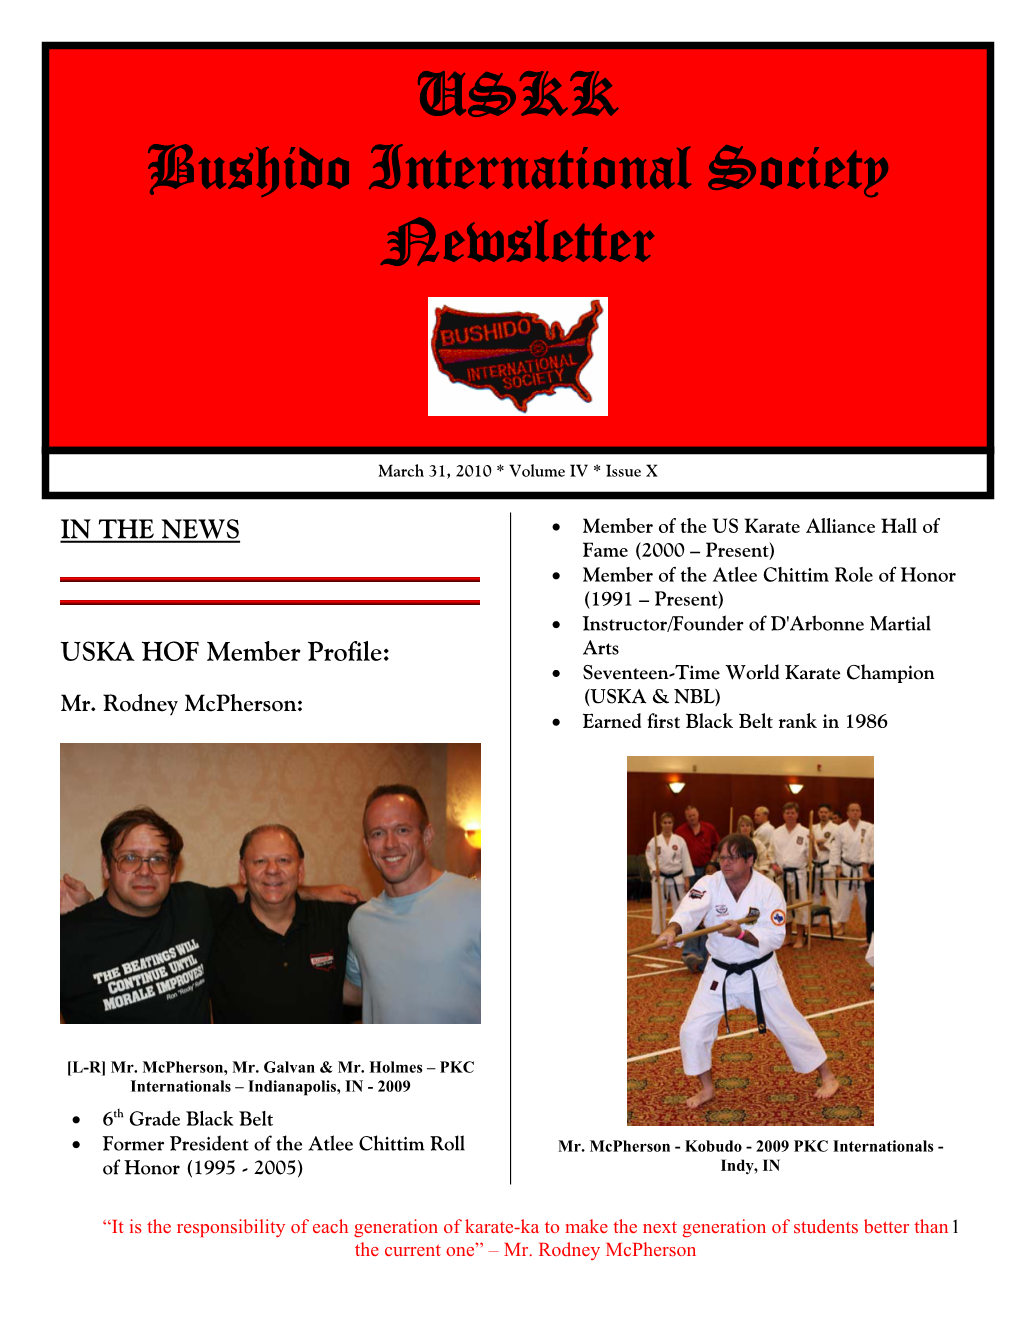 USKK Bushido International Society Newsletter